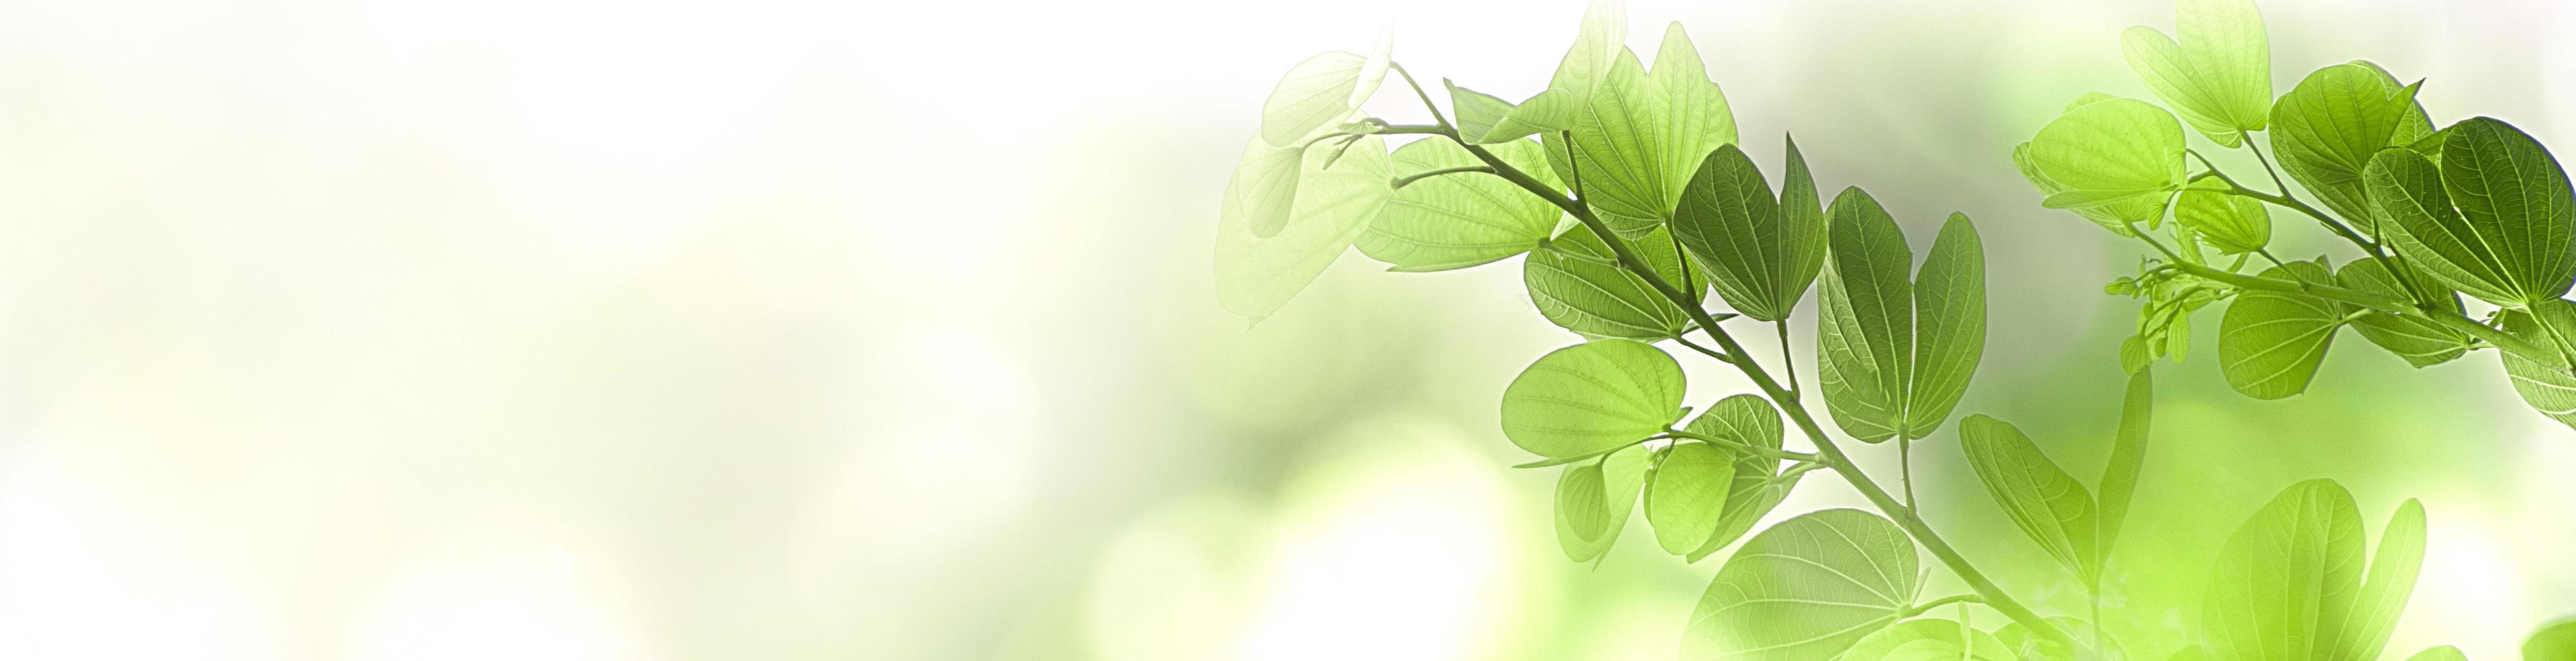 natur grönt träd färskt blad på vacker suddig mjuk bokeh solljus bakgrund med gratis kopia utrymme, vårsommar eller miljöomslag, mall, webbbanner och rubrik. foto